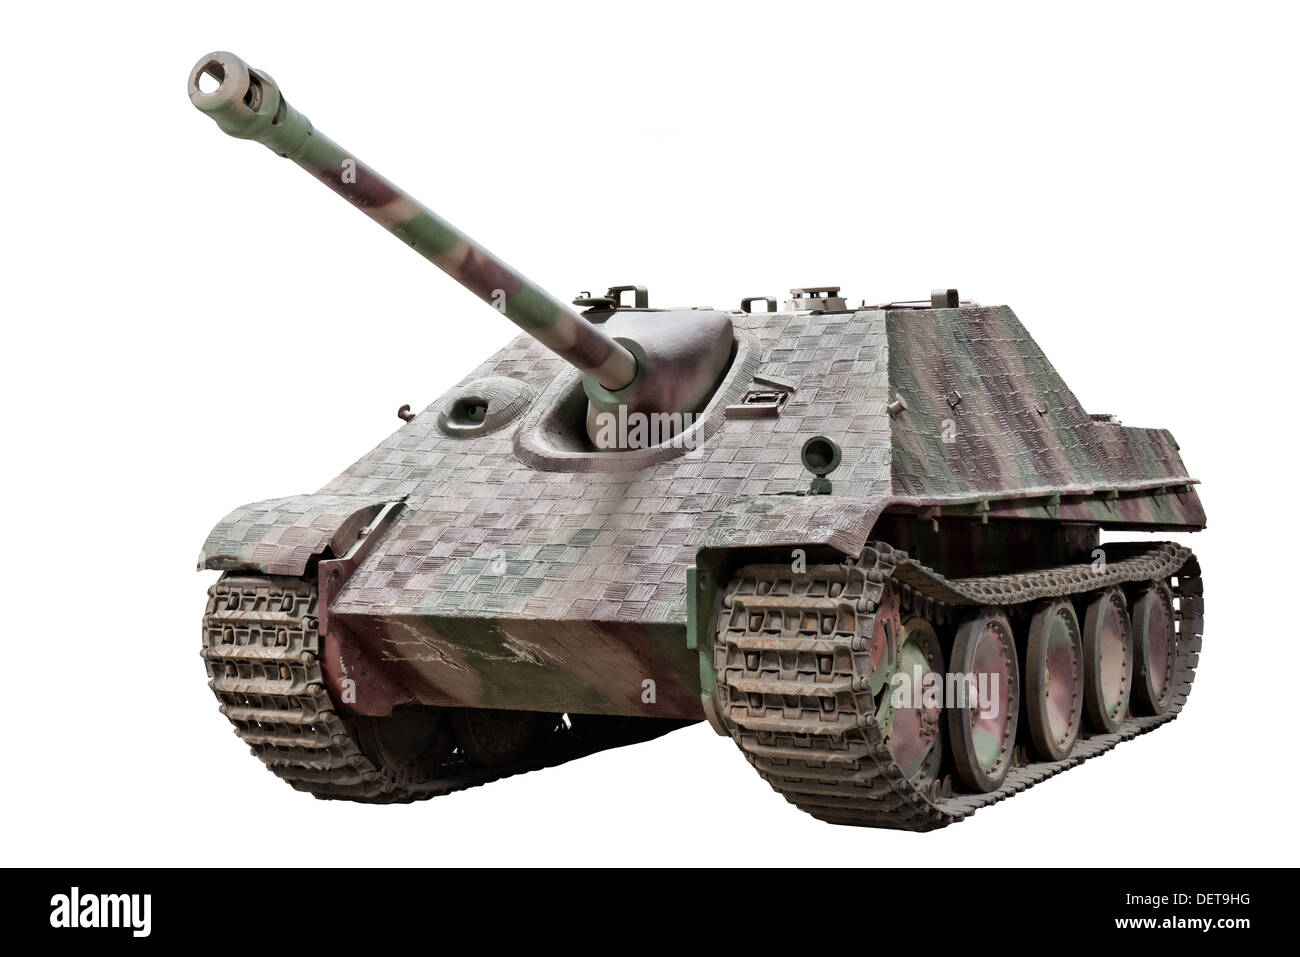 Jagdpanzer v Banque d'images détourées - Alamy